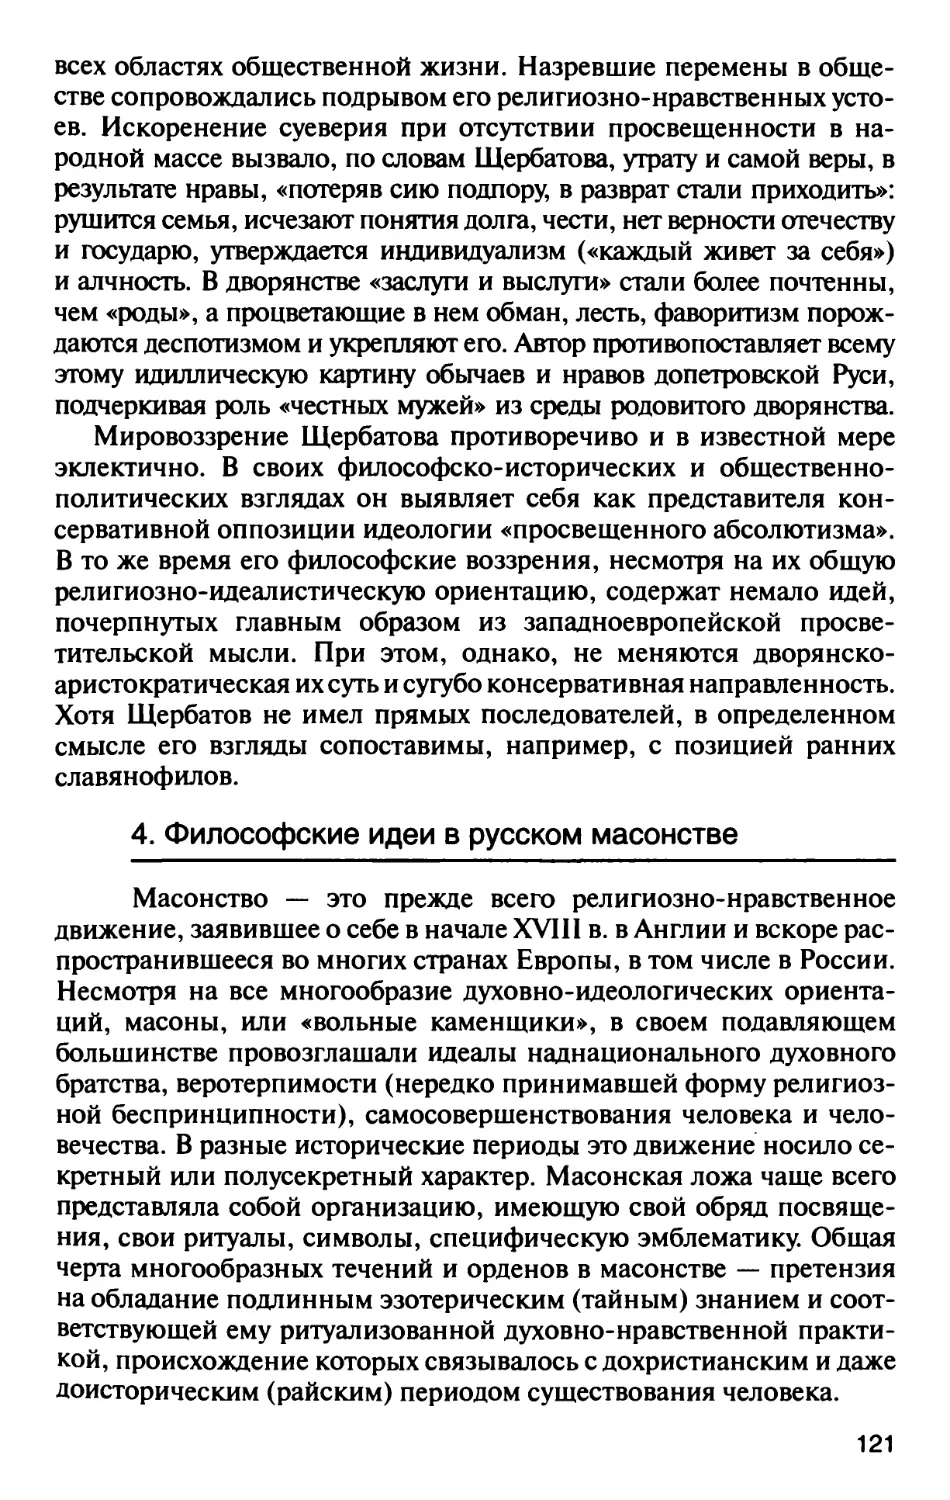 4. Философские идеи в русском масонстве